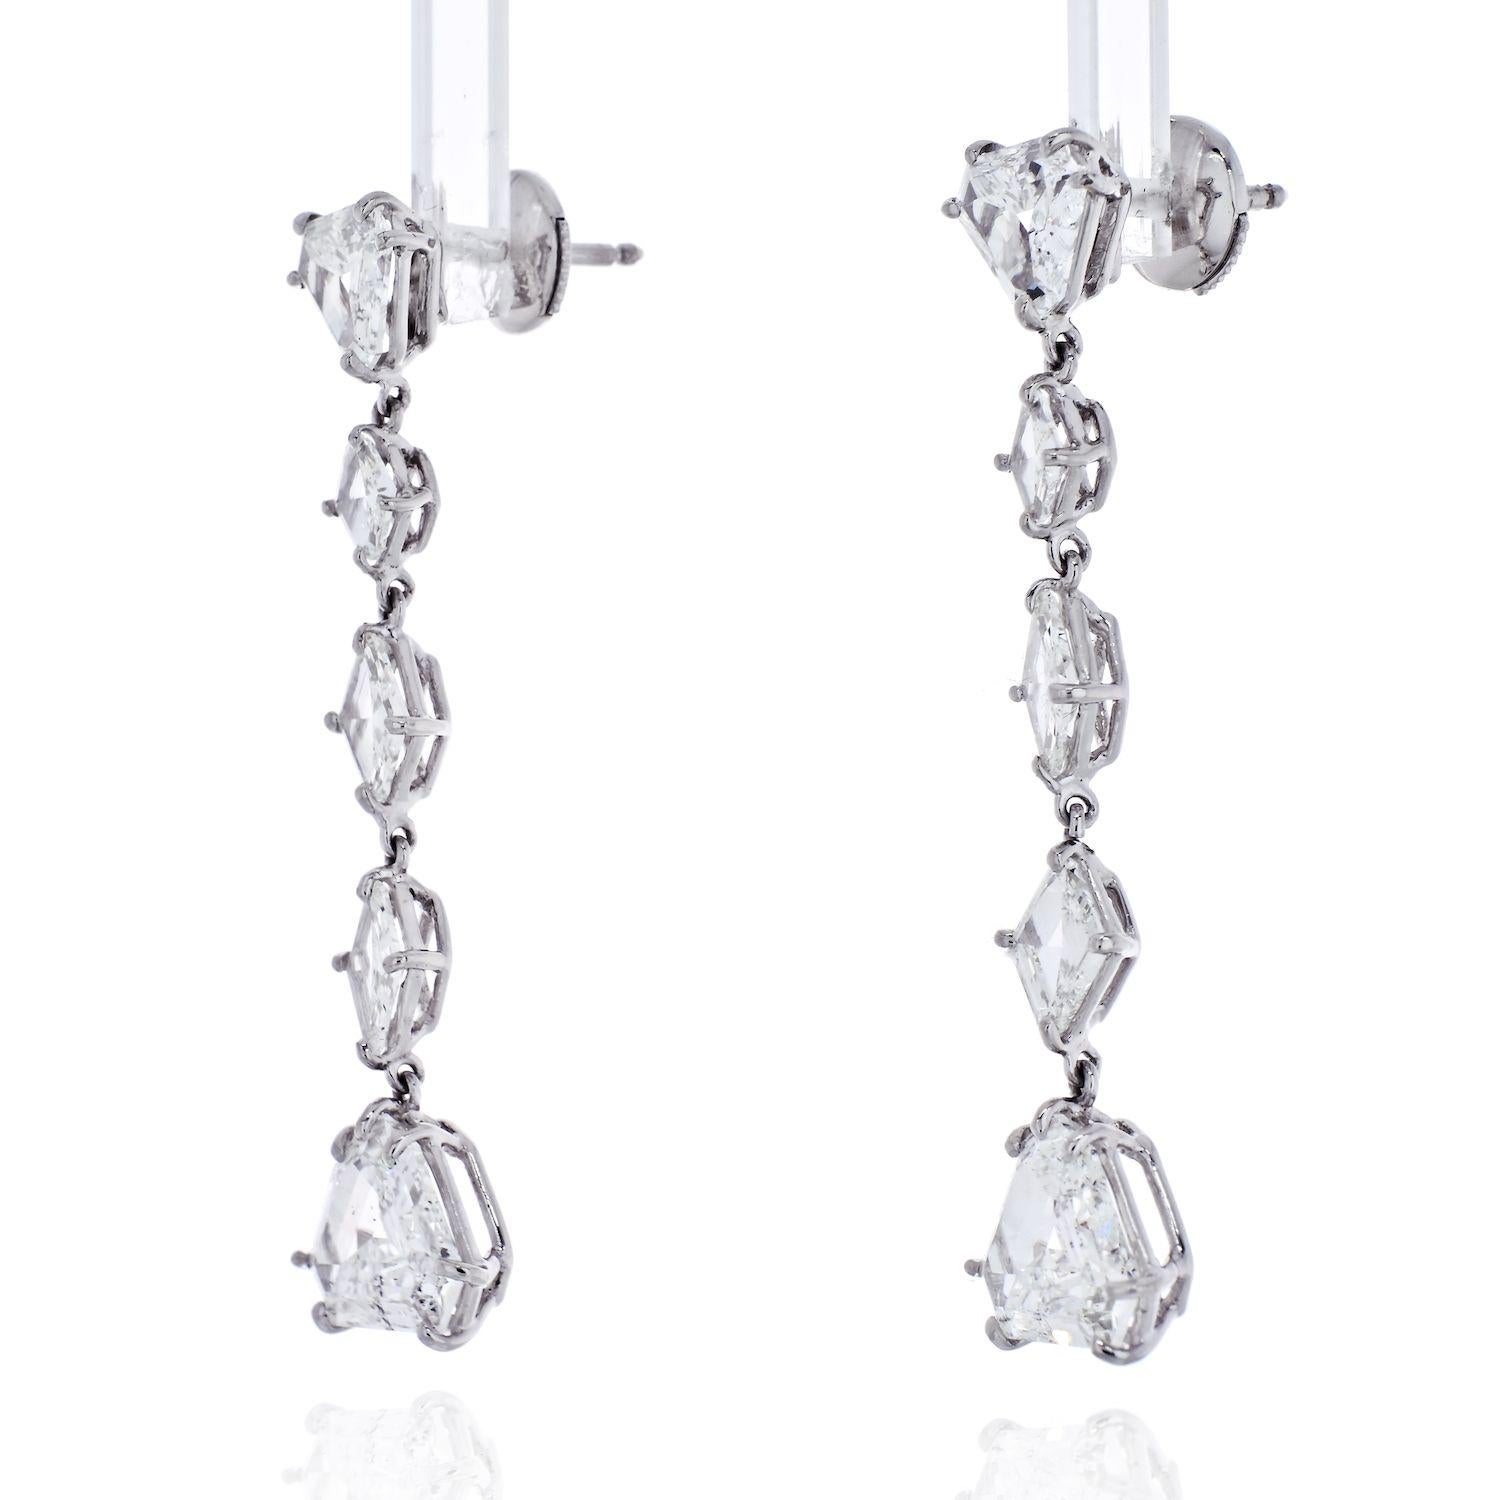 Boucles d'oreilles pendantes en diamant de 7 carats en platine et pierre fine

Réalisées en platine, ces boucles d'oreilles pendantes sont ornées de diamants taille bouclier et taille cerf-volant. 

Chaque boucle d'oreille contient 5 diamants